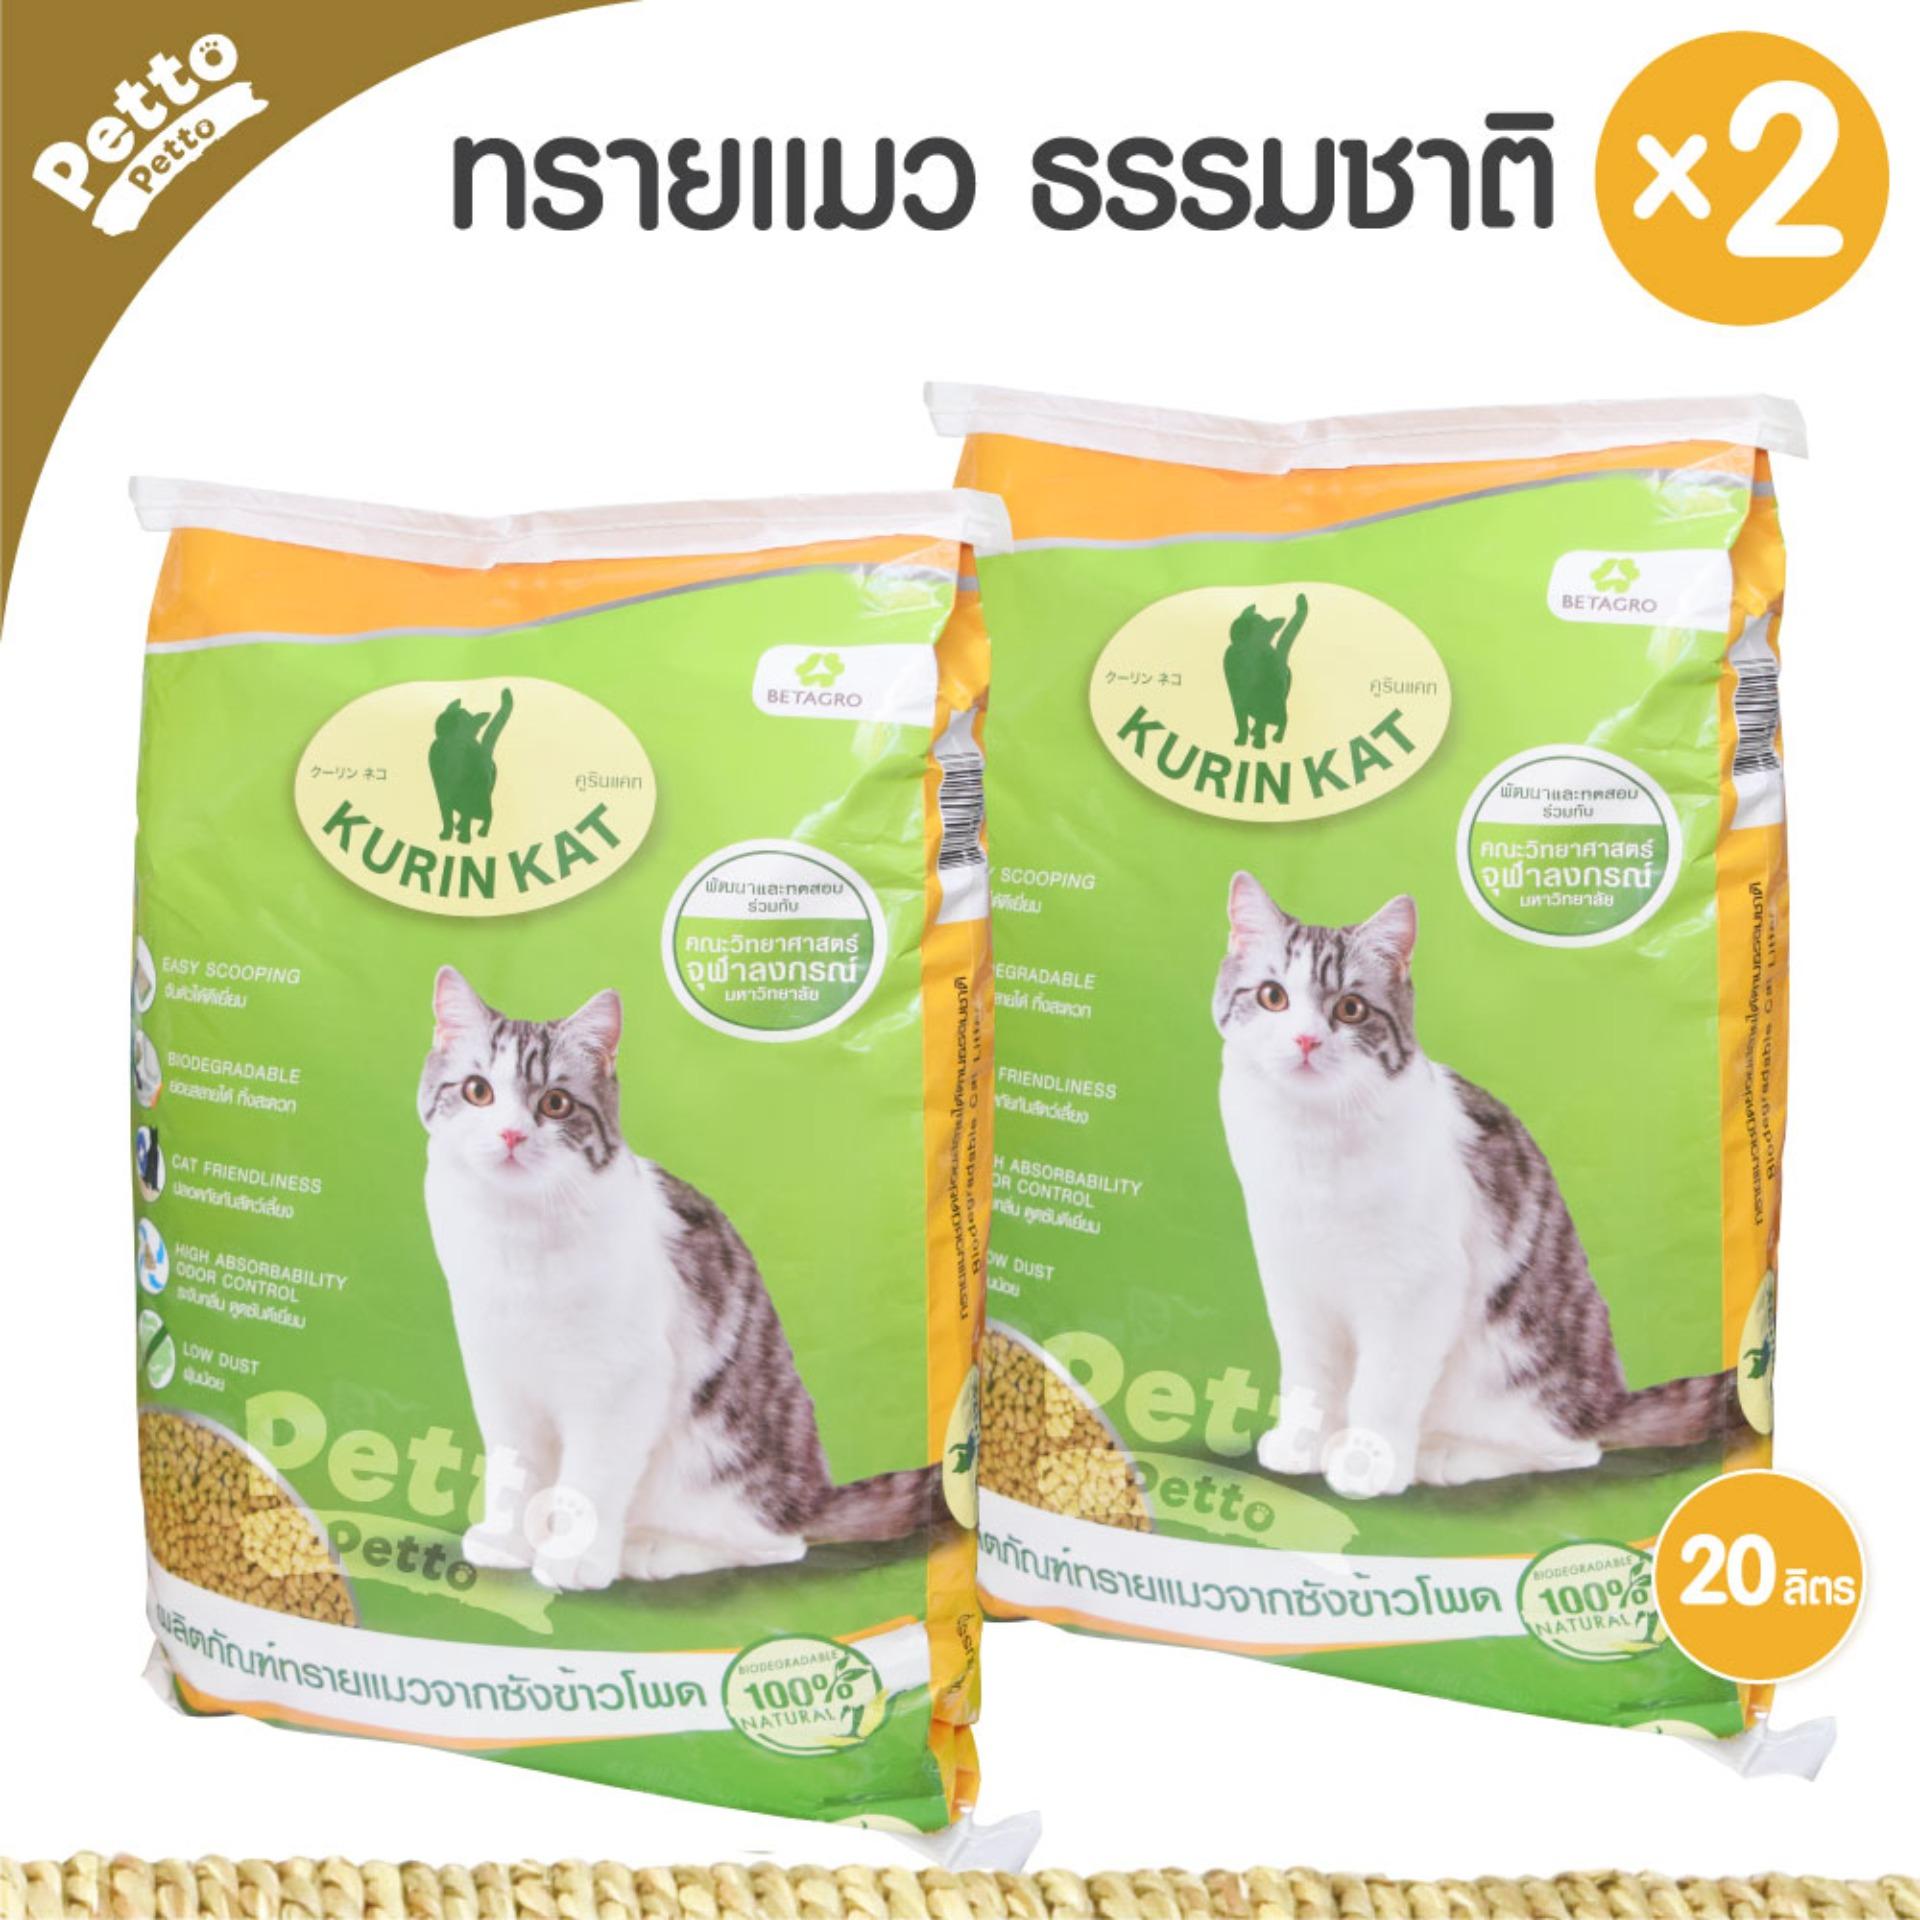 Kurin Kat ผลิตภัณฑ์ทรายแมวจากซังข้าวโพด ย่อยสลายได้ ทิ้งสะดวก 20 ลิตร - 2 ชิ้น